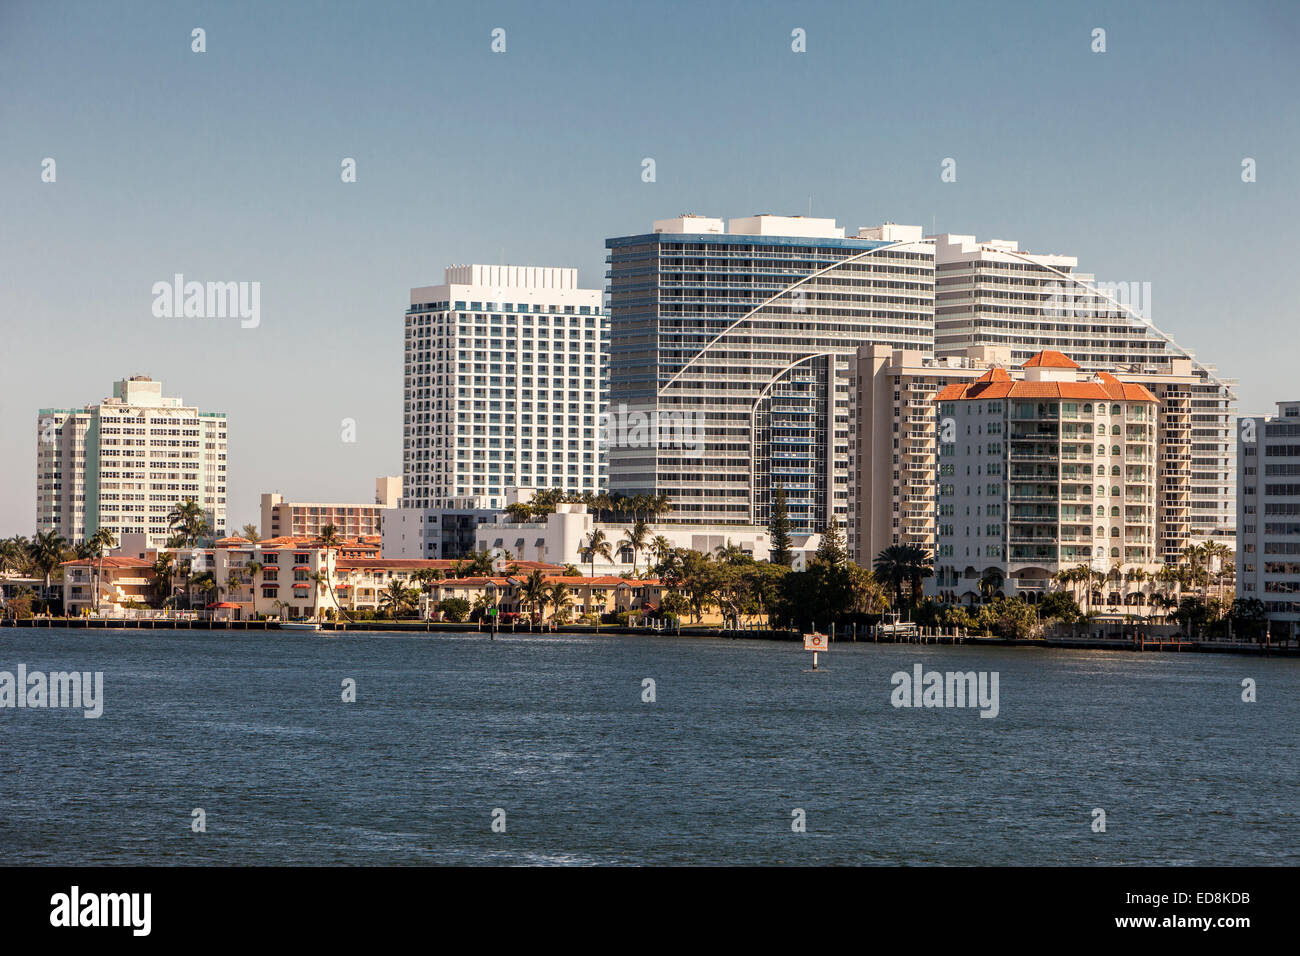 Ft. Lauderdale, Florida.  Blick nach Norden auf den Intracoastal Waterway.  W Hotel auf der rechten Seite. Stockfoto